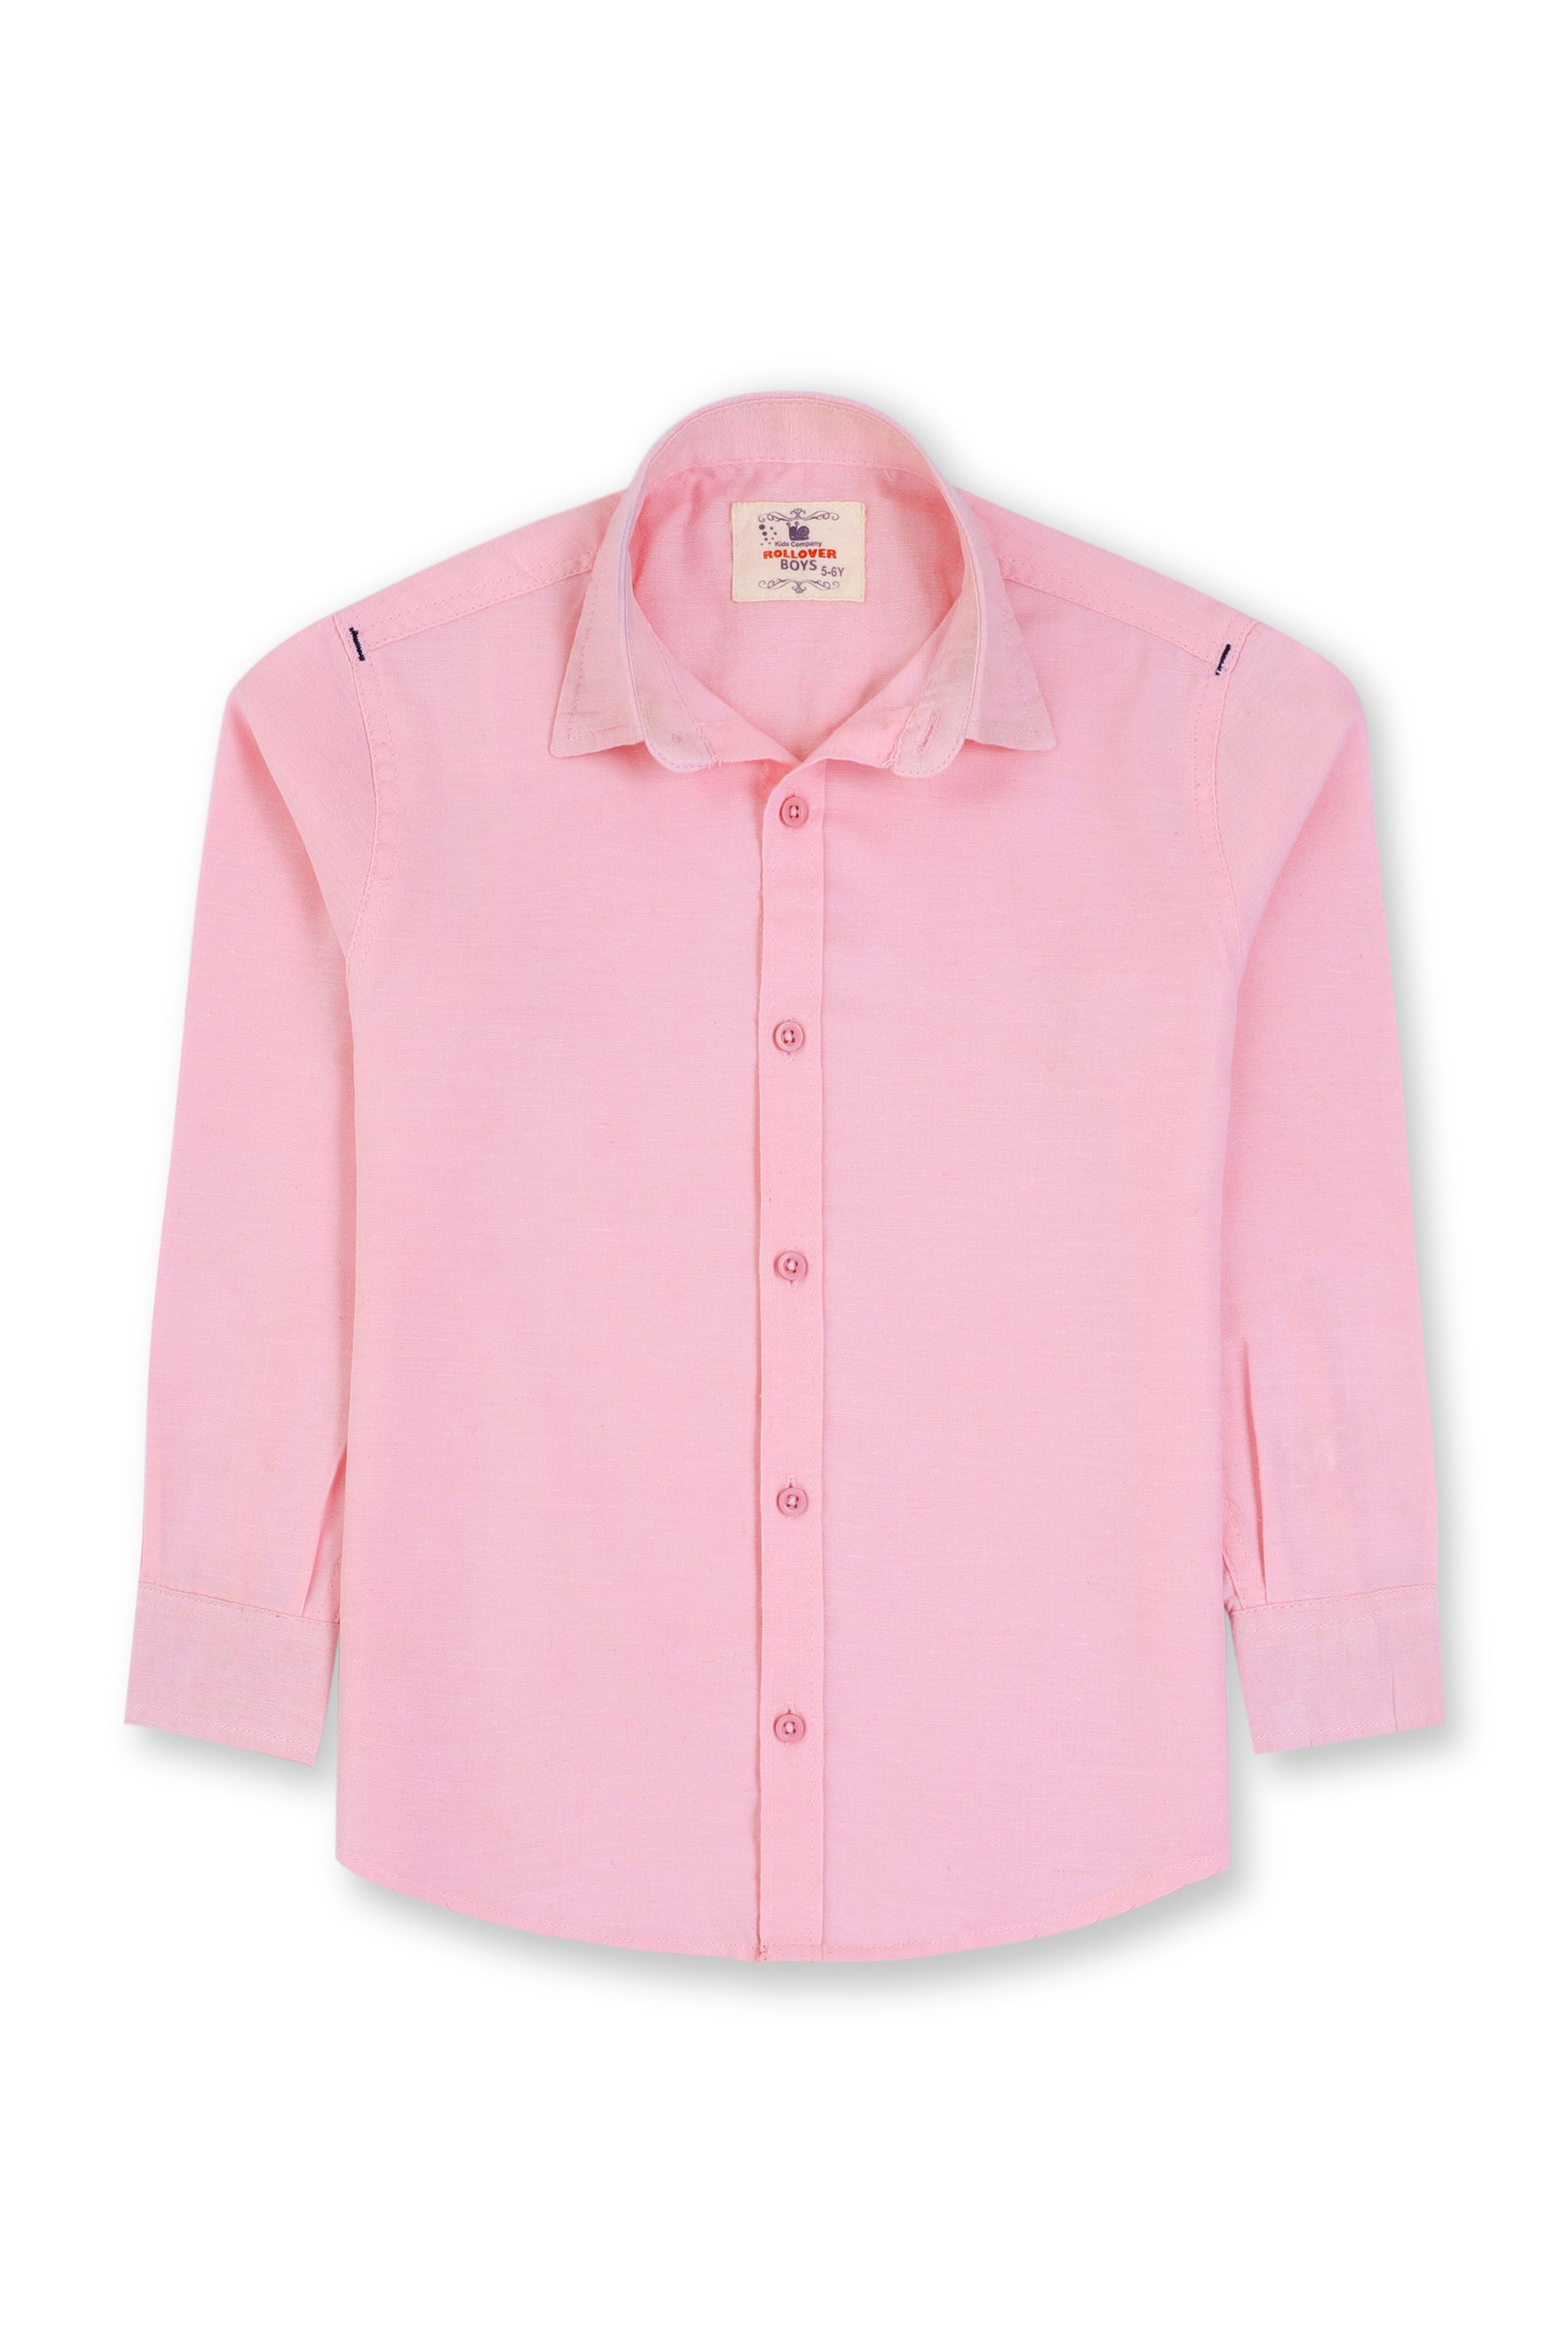 Boys Pink Chambray Casual Shirt